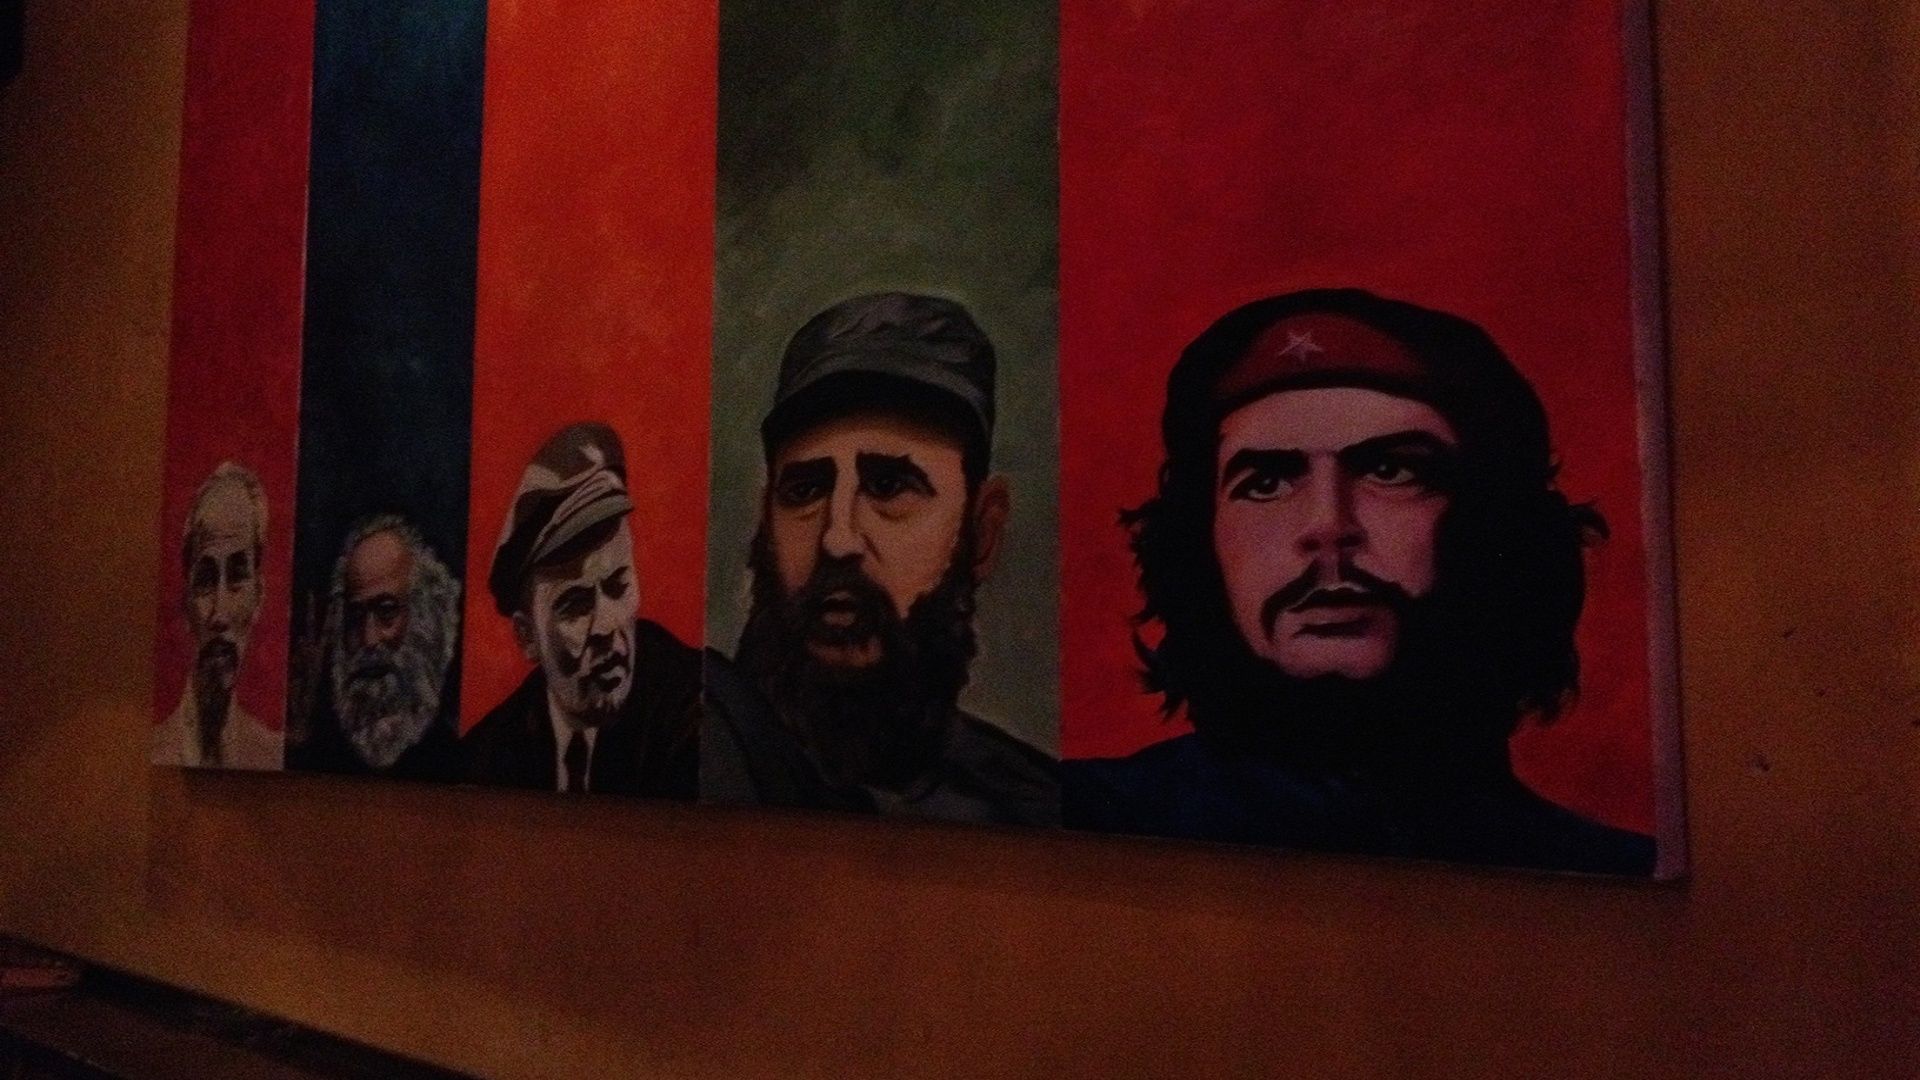 Communist Wallpapers Hd - Fidel Castro Karl Marx , HD Wallpaper & Backgrounds